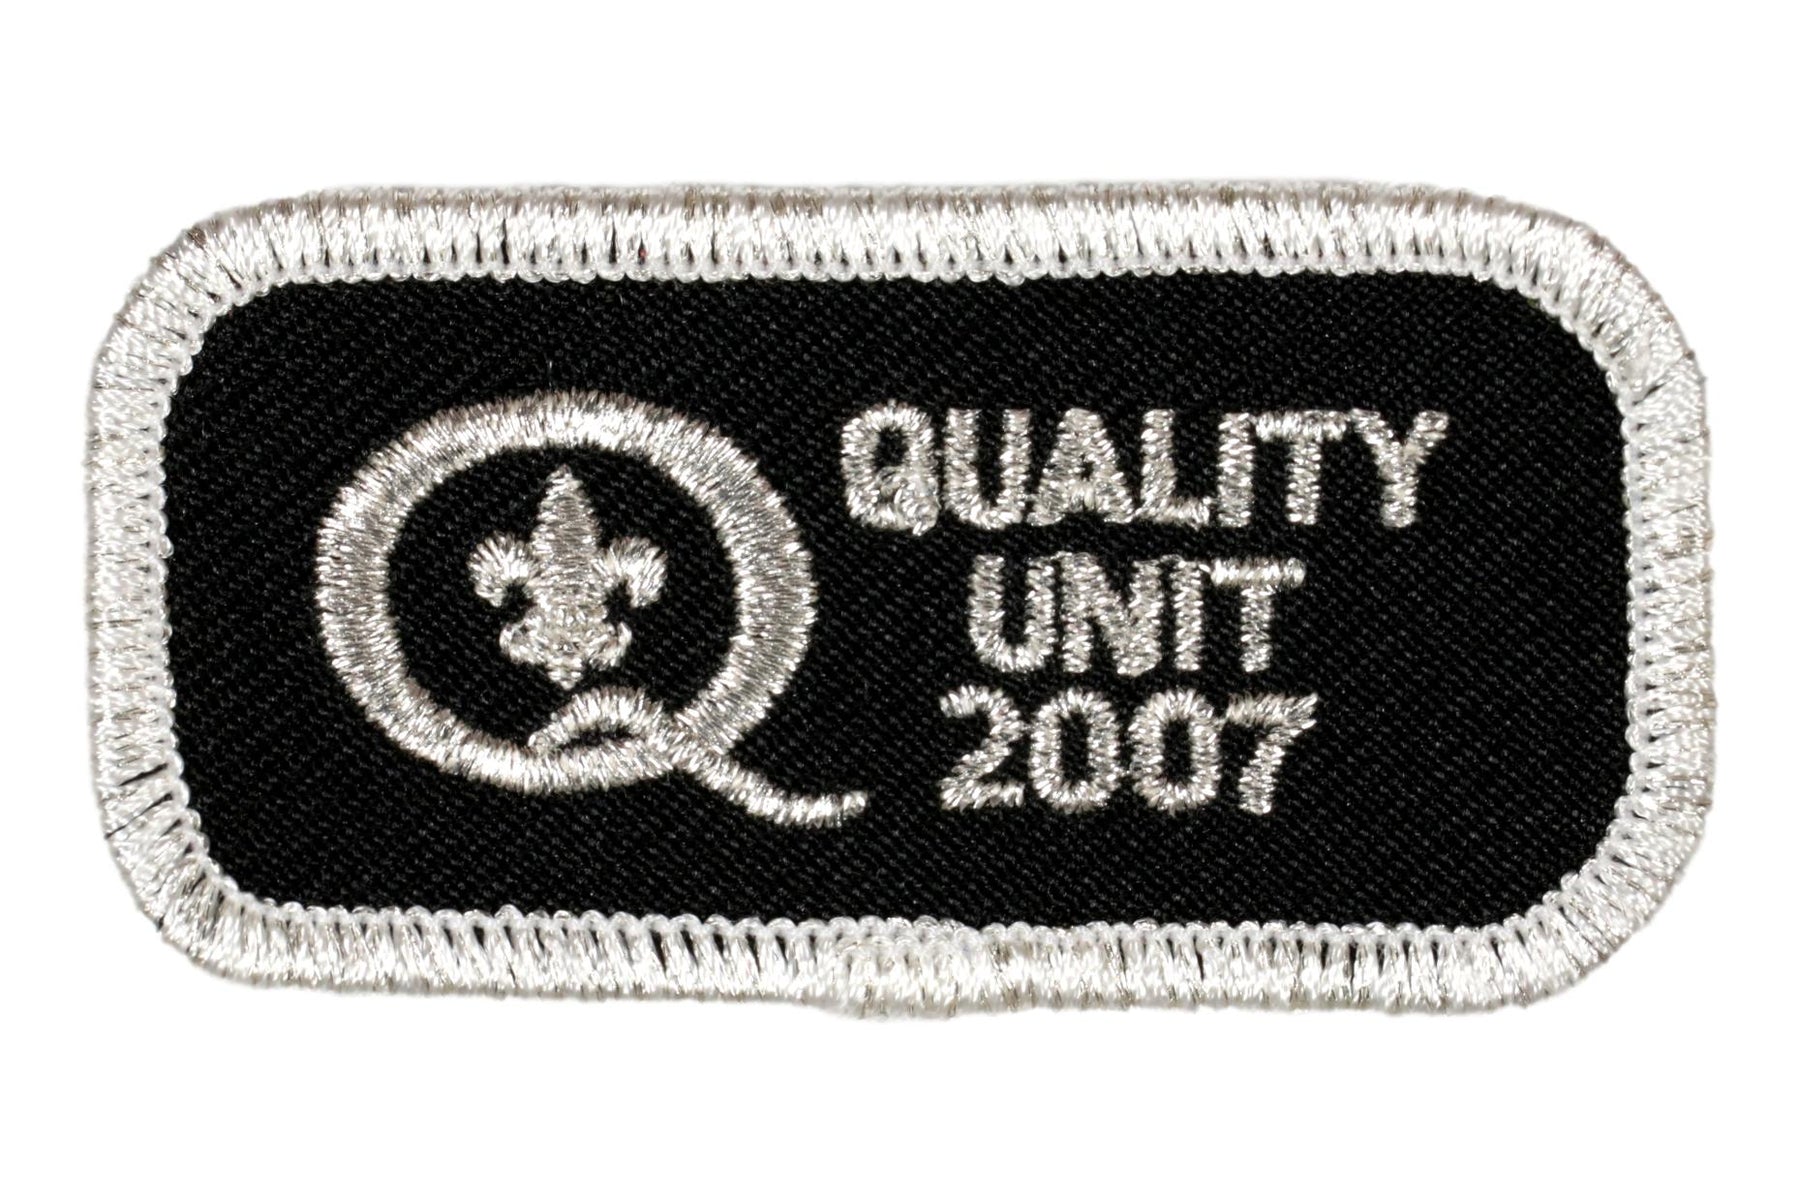 2007 Quality Unit Patch